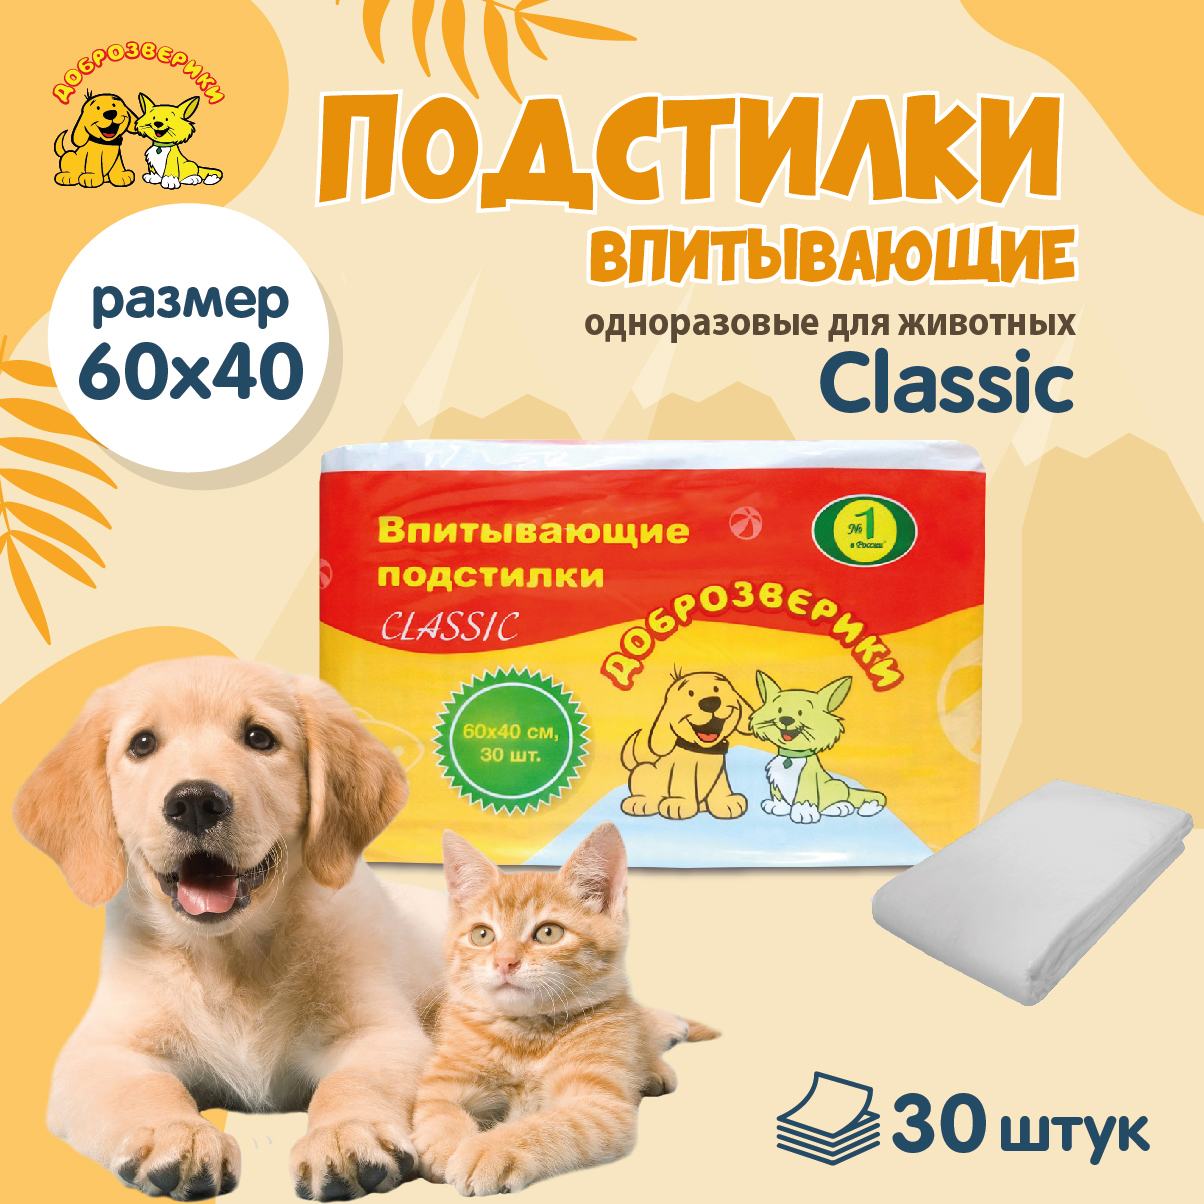 Пеленки для кошек и собак одноразовые Доброзверики Classic 60 x 40 см, 30 шт